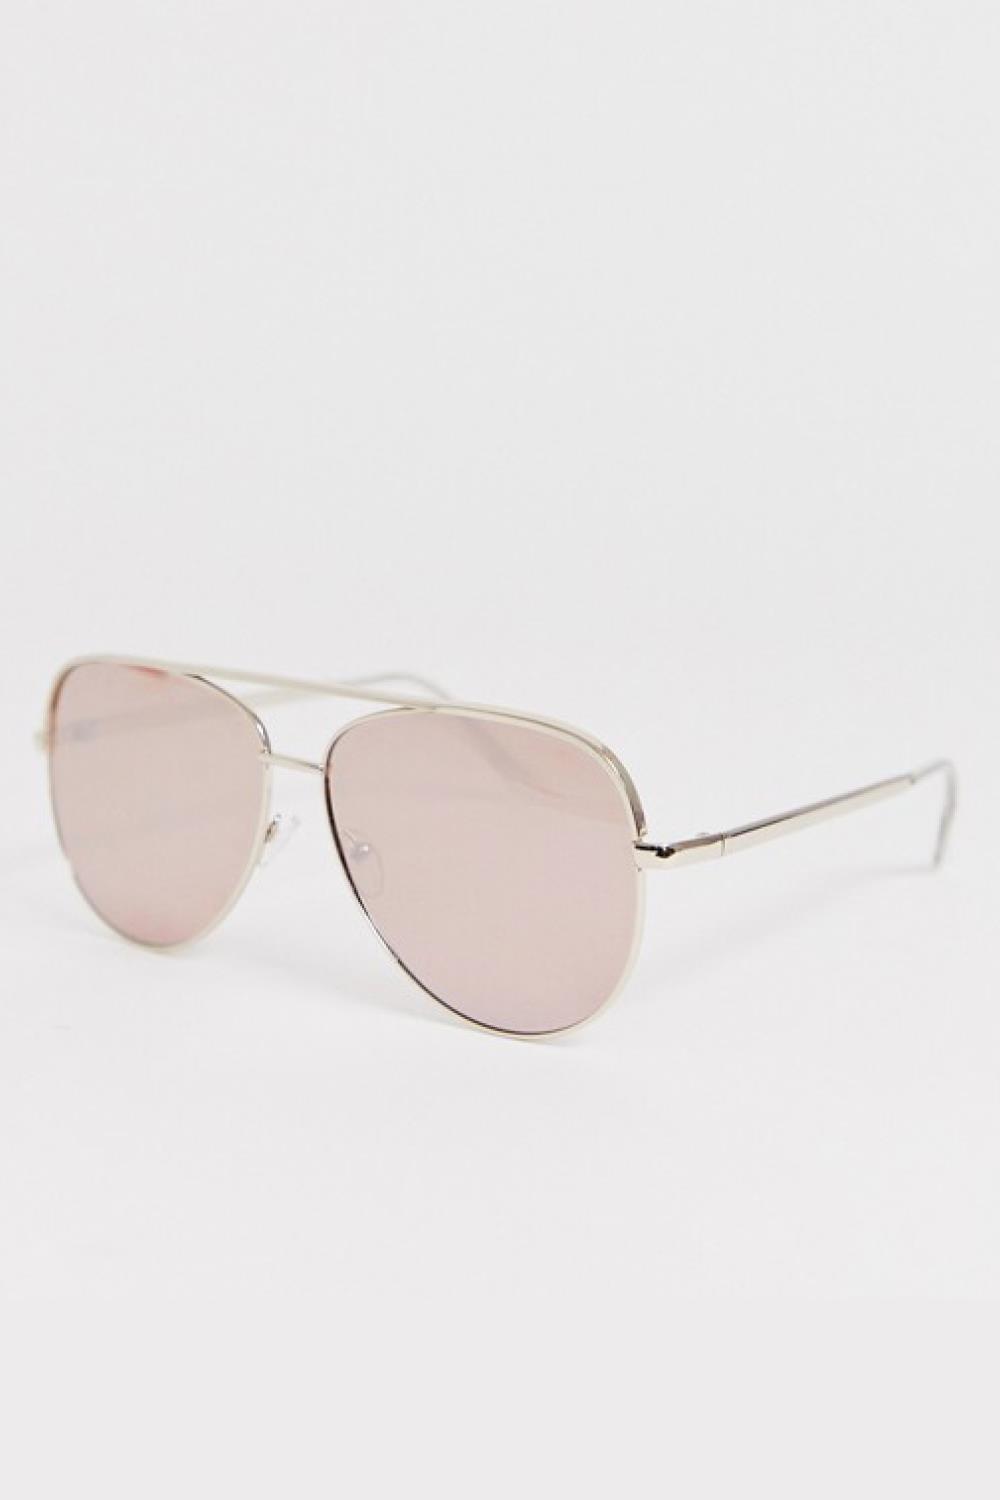 ropa de moda novedades low cost gafas de sol asos 15,99€